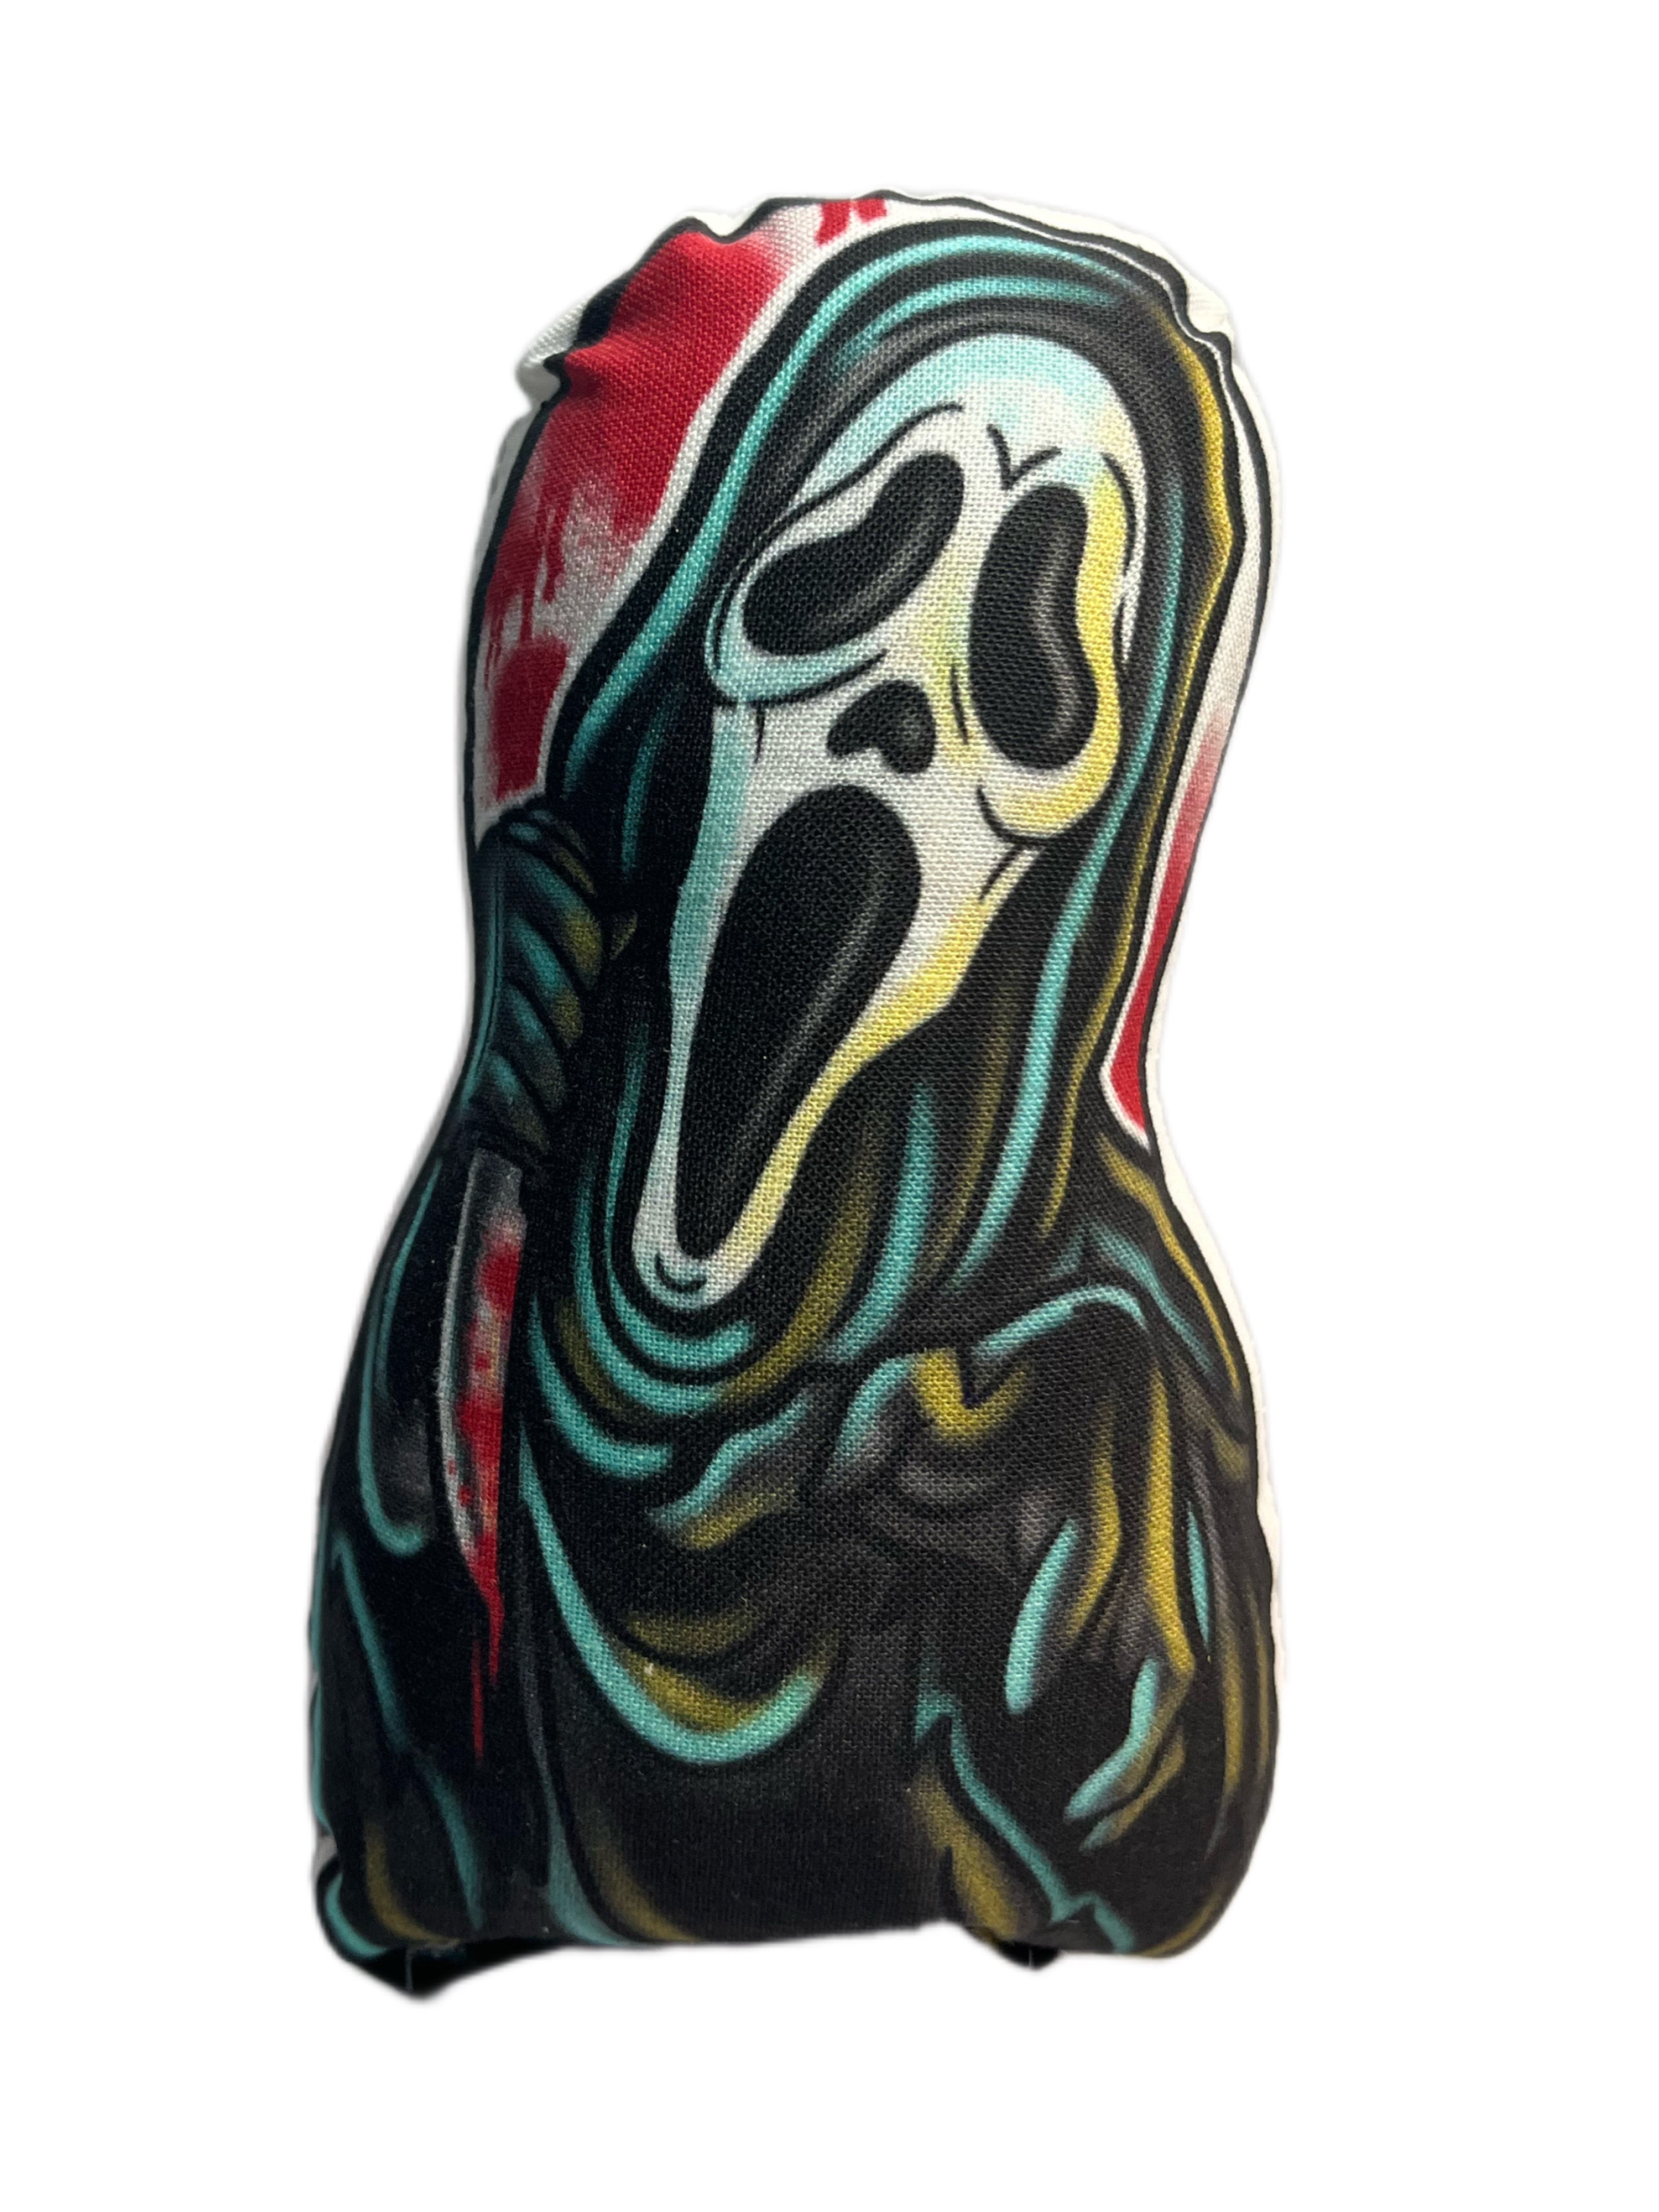 Ghostface Plush : r/Scream